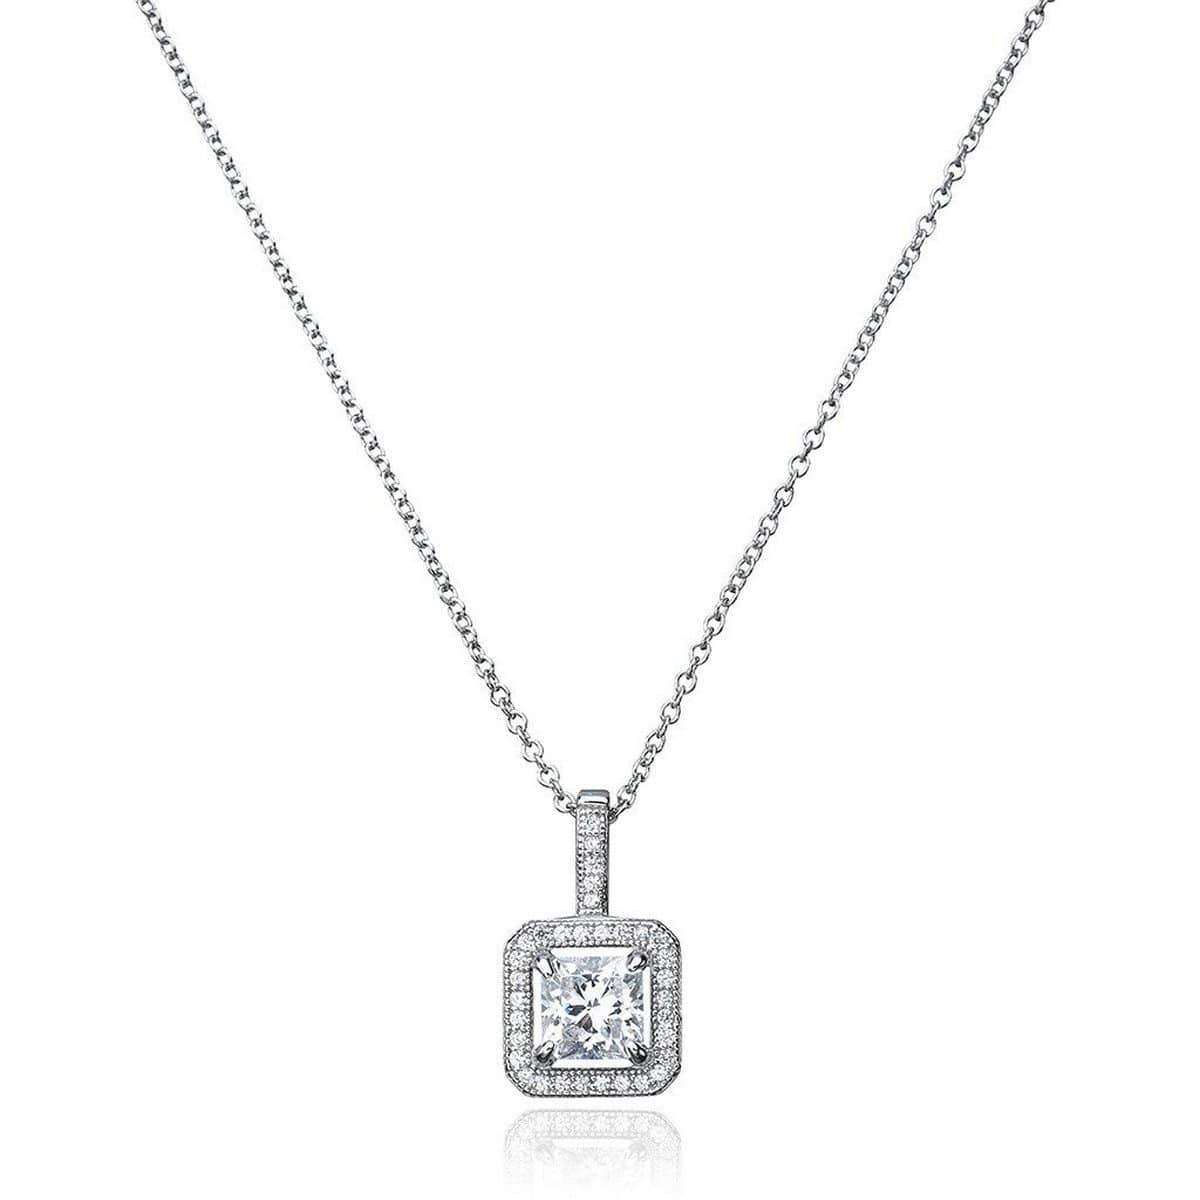 Crislu Jewelry CRISLU Princess Cut Pendant With Halo Finished in Pure Platinum